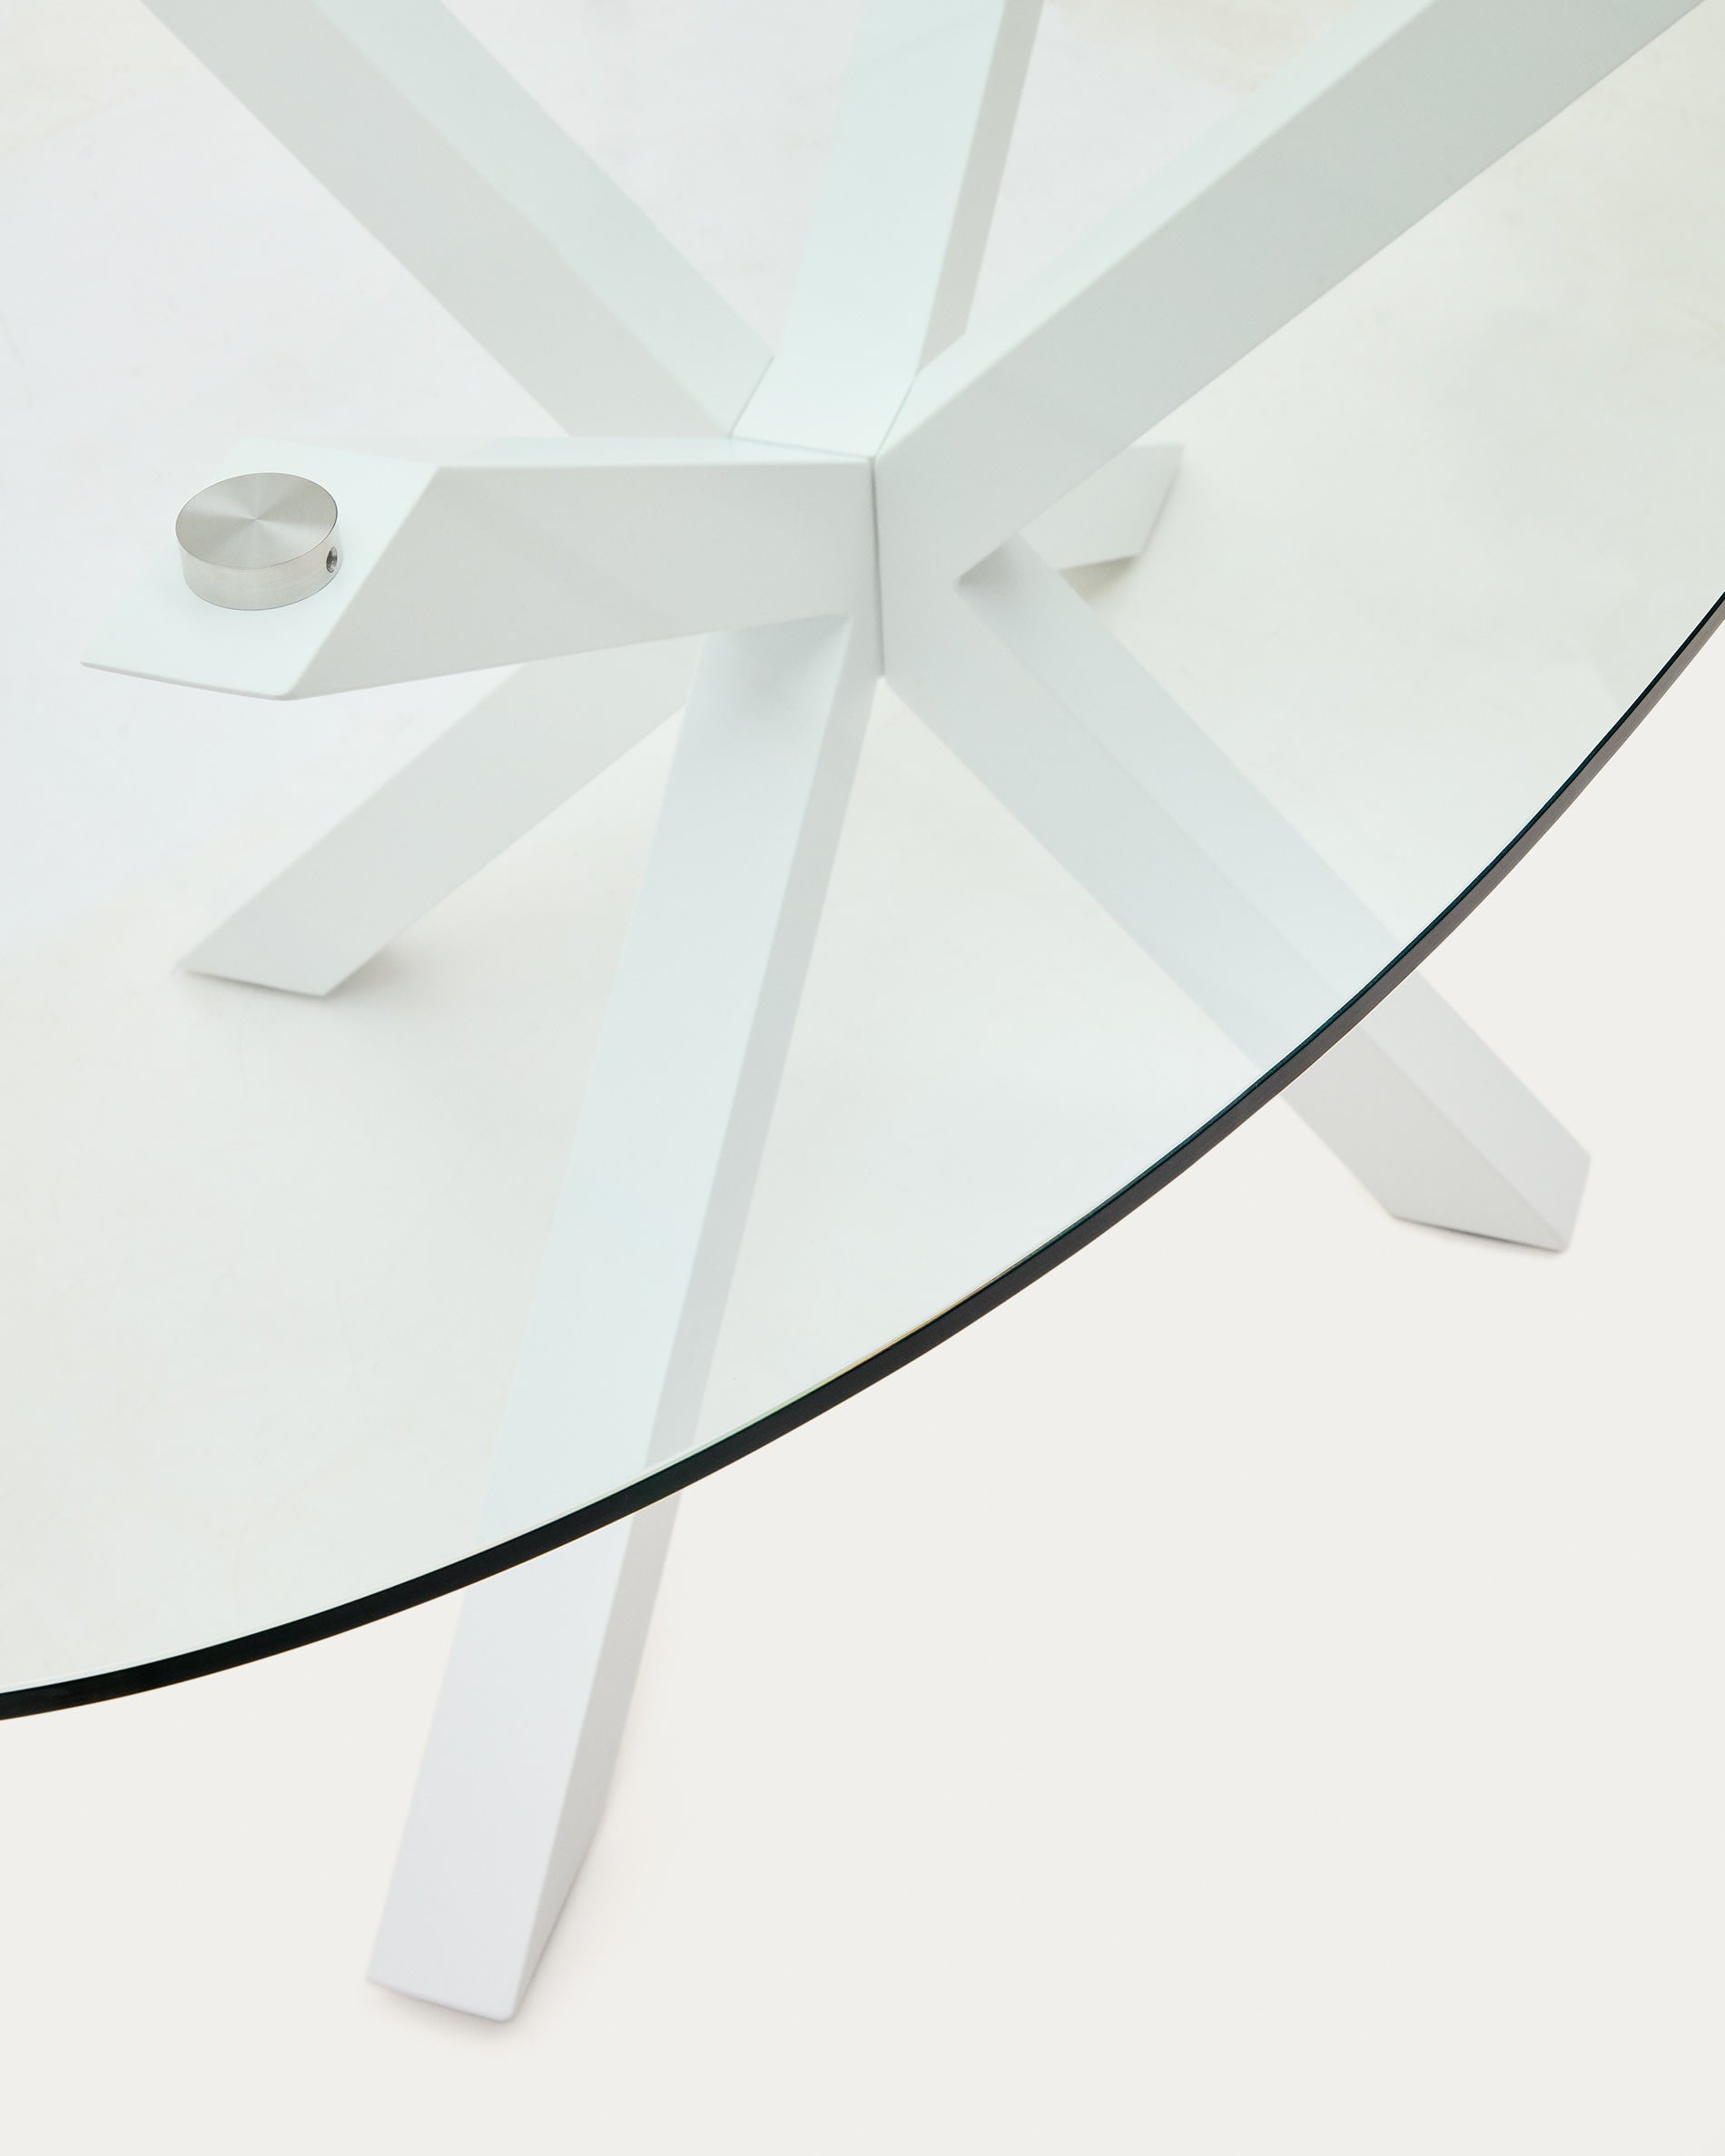 Argo ovális asztal üveglappal és acél lábakkal, fehér befejezéssel Ø 200 x 100 cm